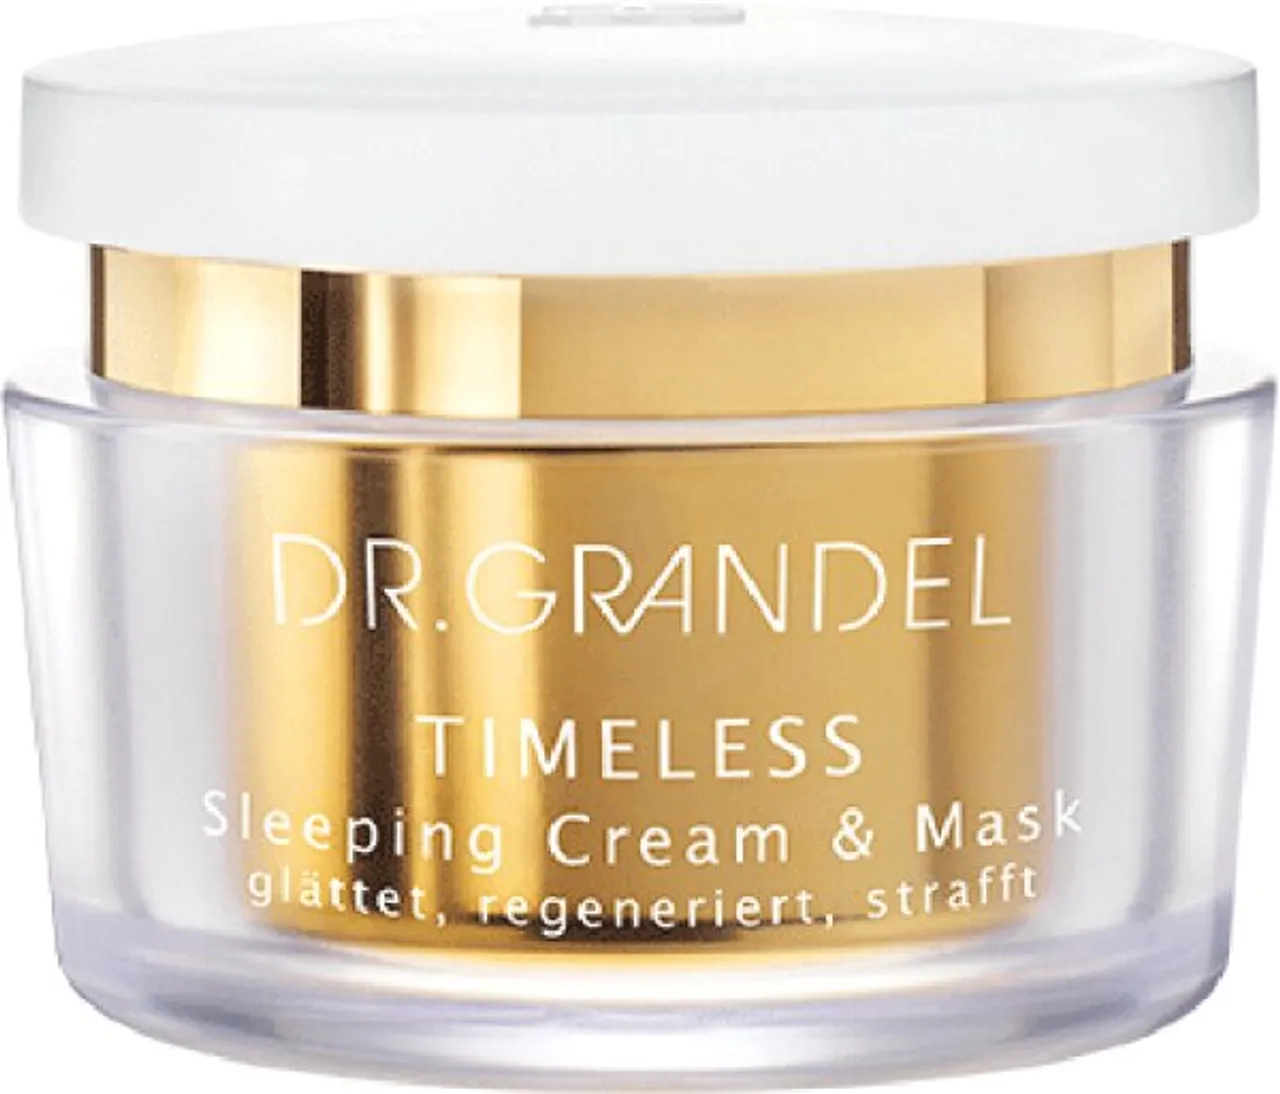 Dr. Grandel Timeless Sleeping Cream & Mask 50 ml